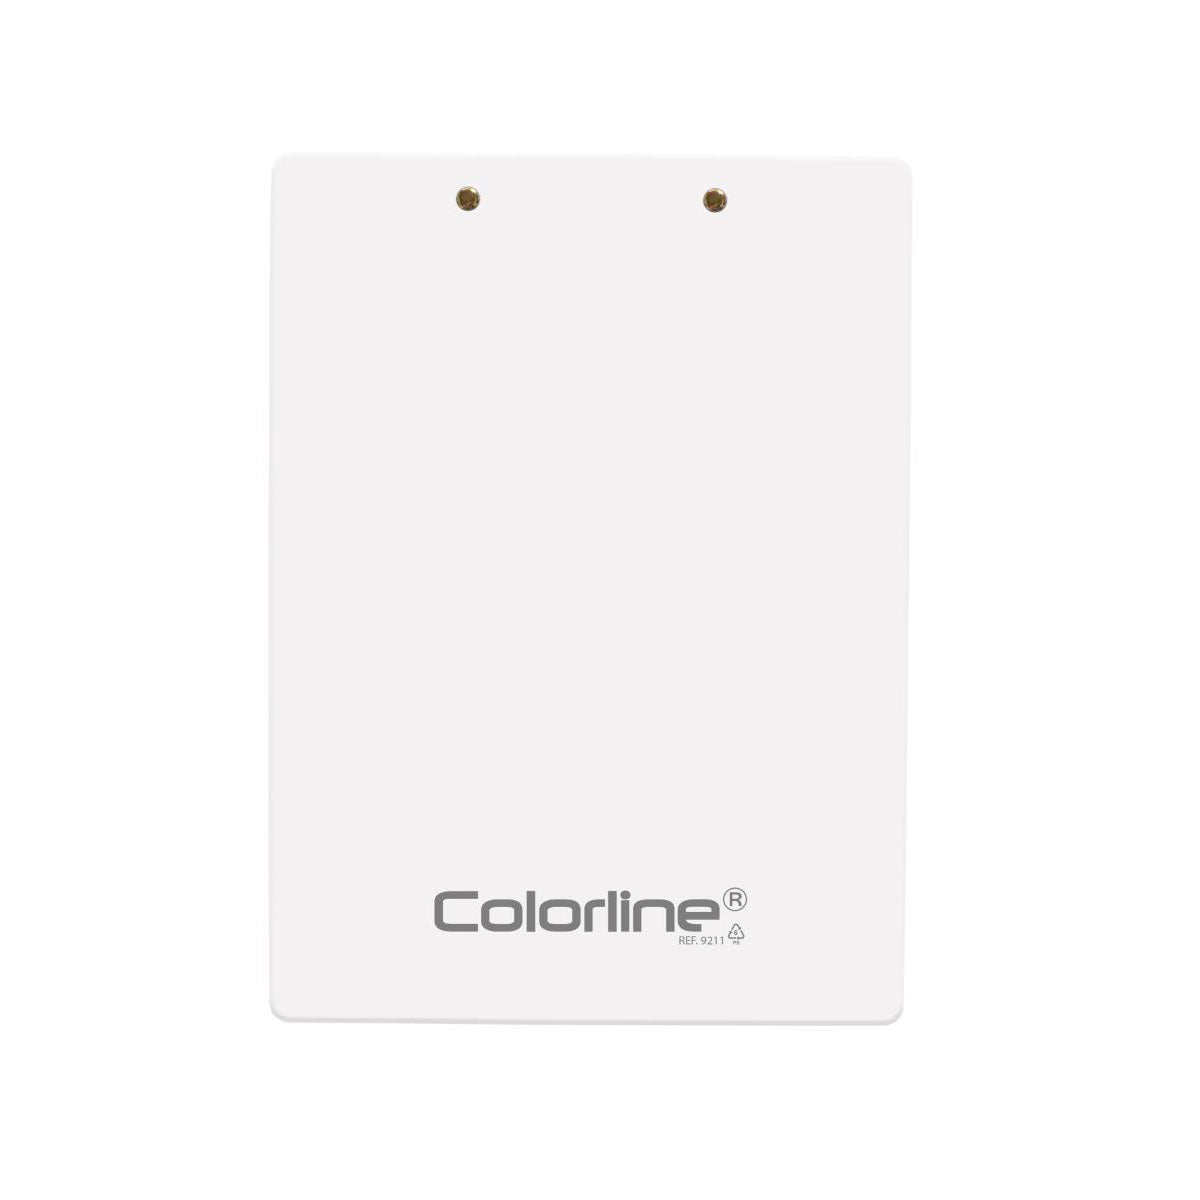 ColorLine - Soporte Porta Documentos A4+ con Pinza y Falsilla de Escritura